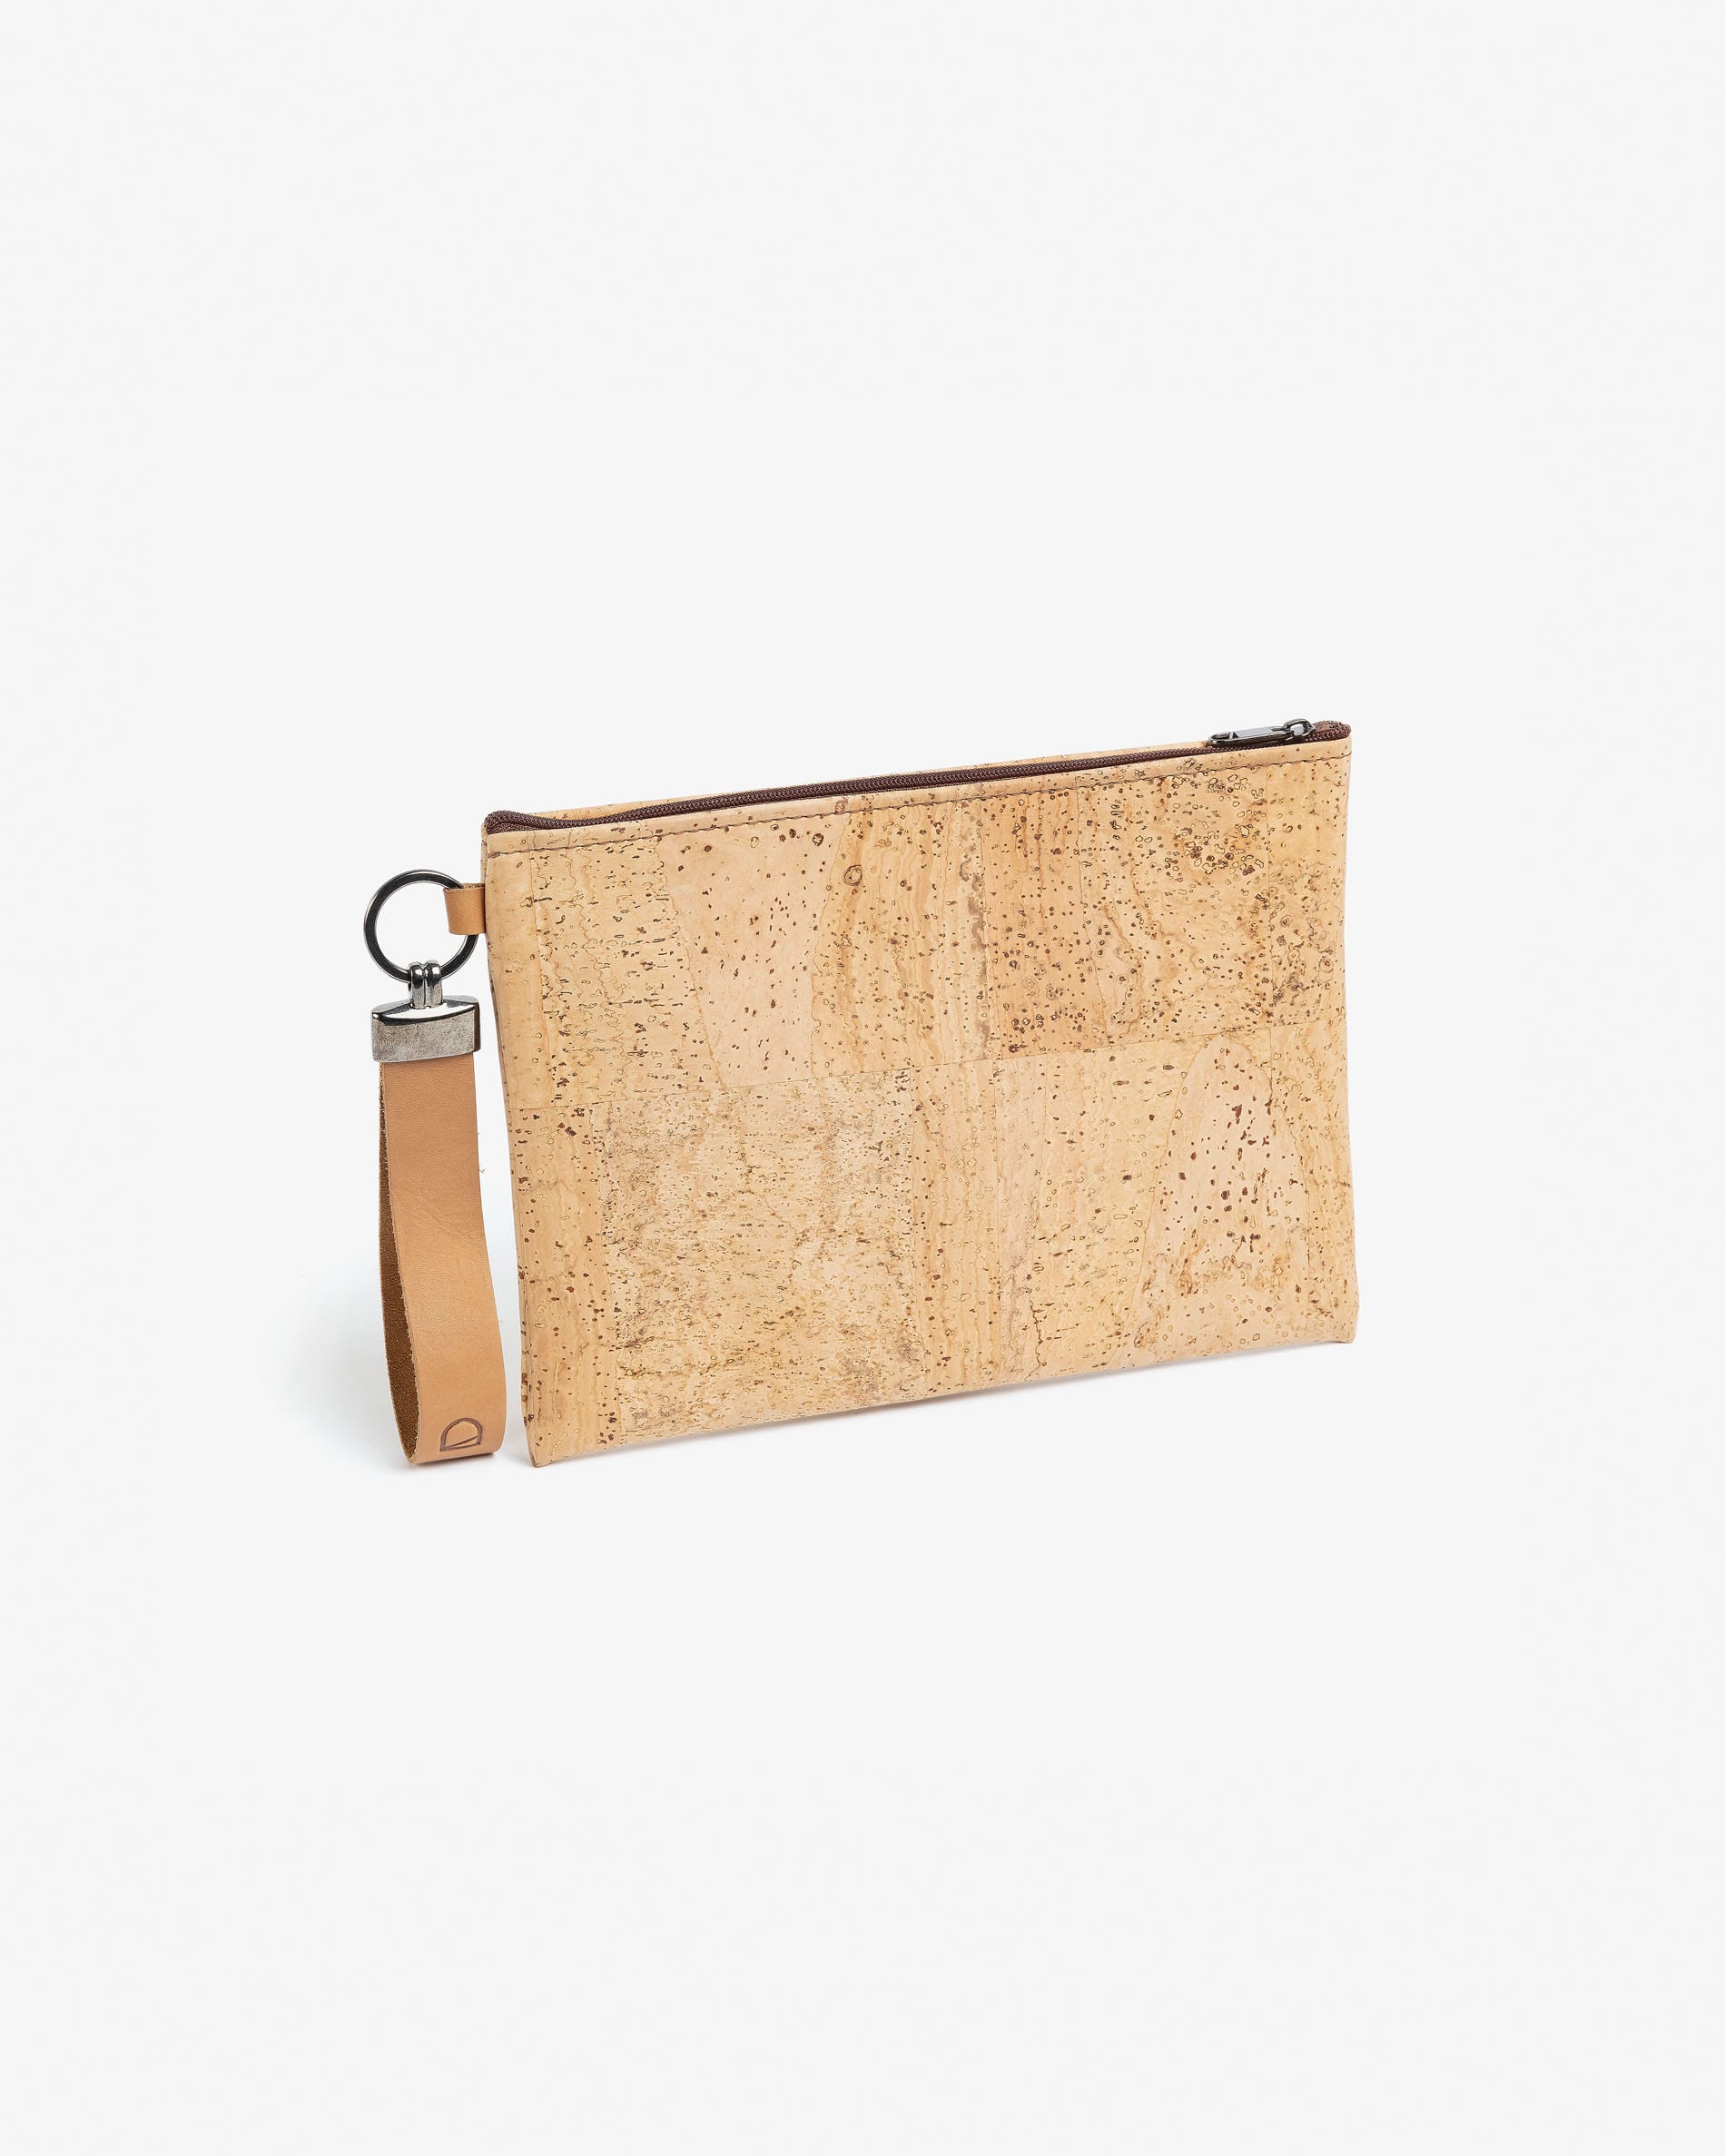 Small bag Foa light cork with zipper